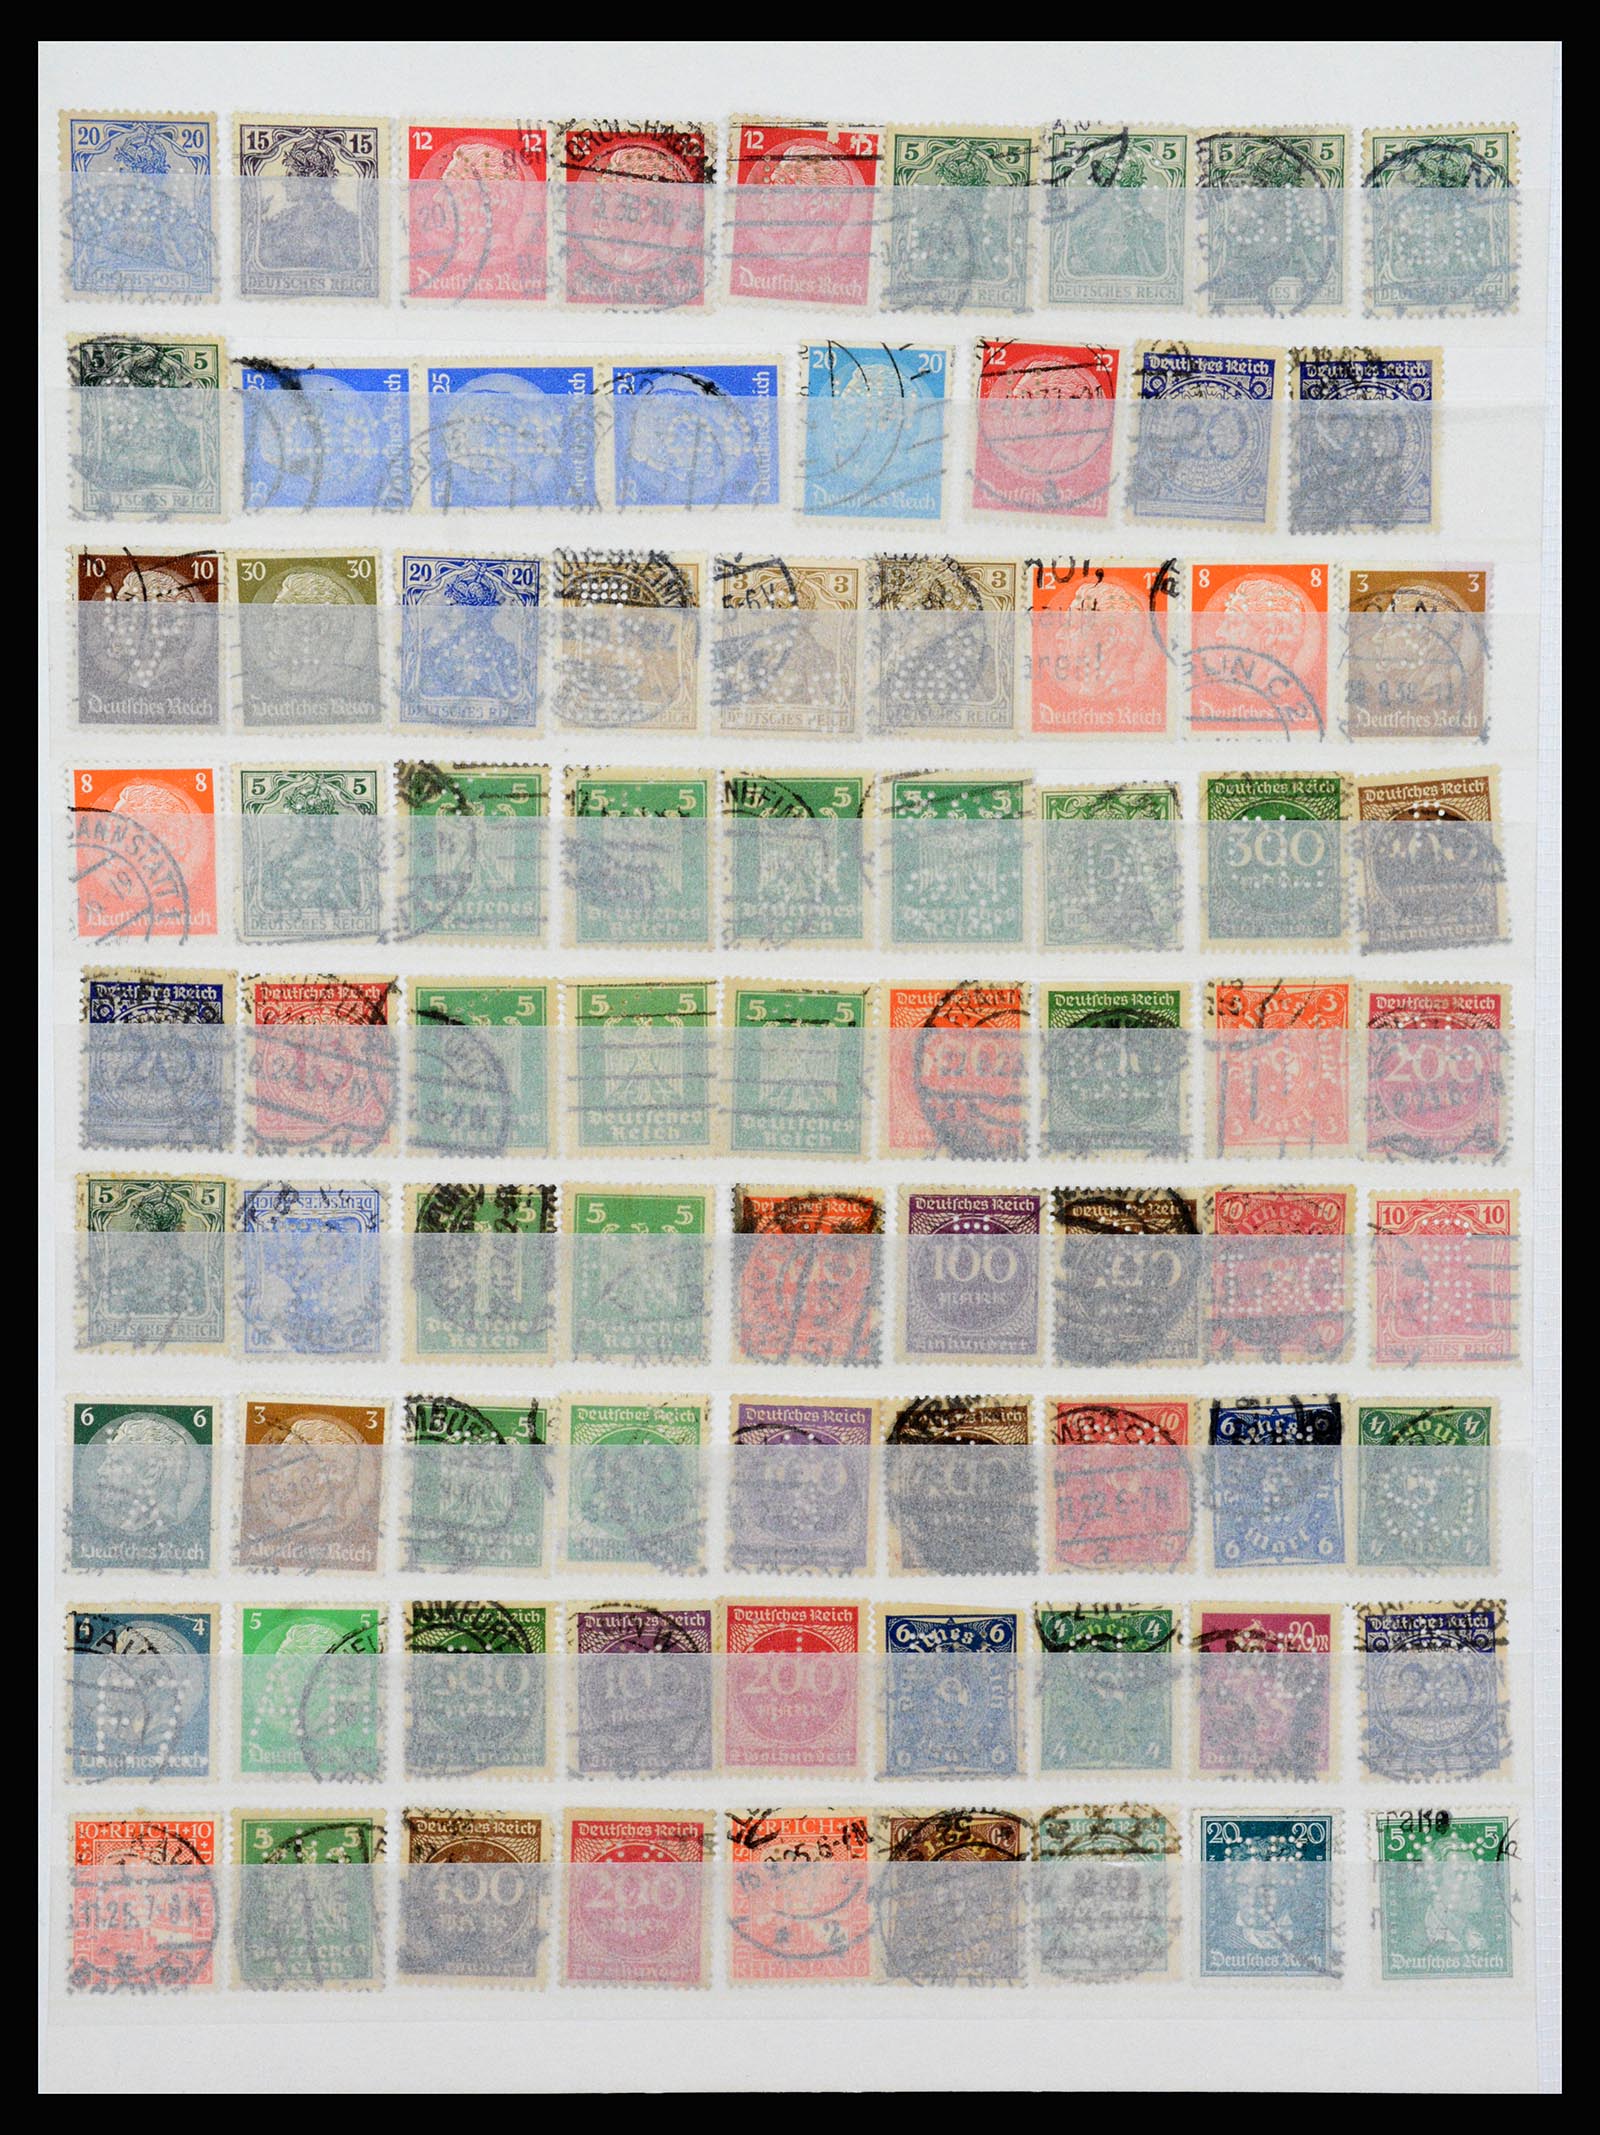 37254 006 - Stamp collection 37254 German Reich perfins 1900-1945.